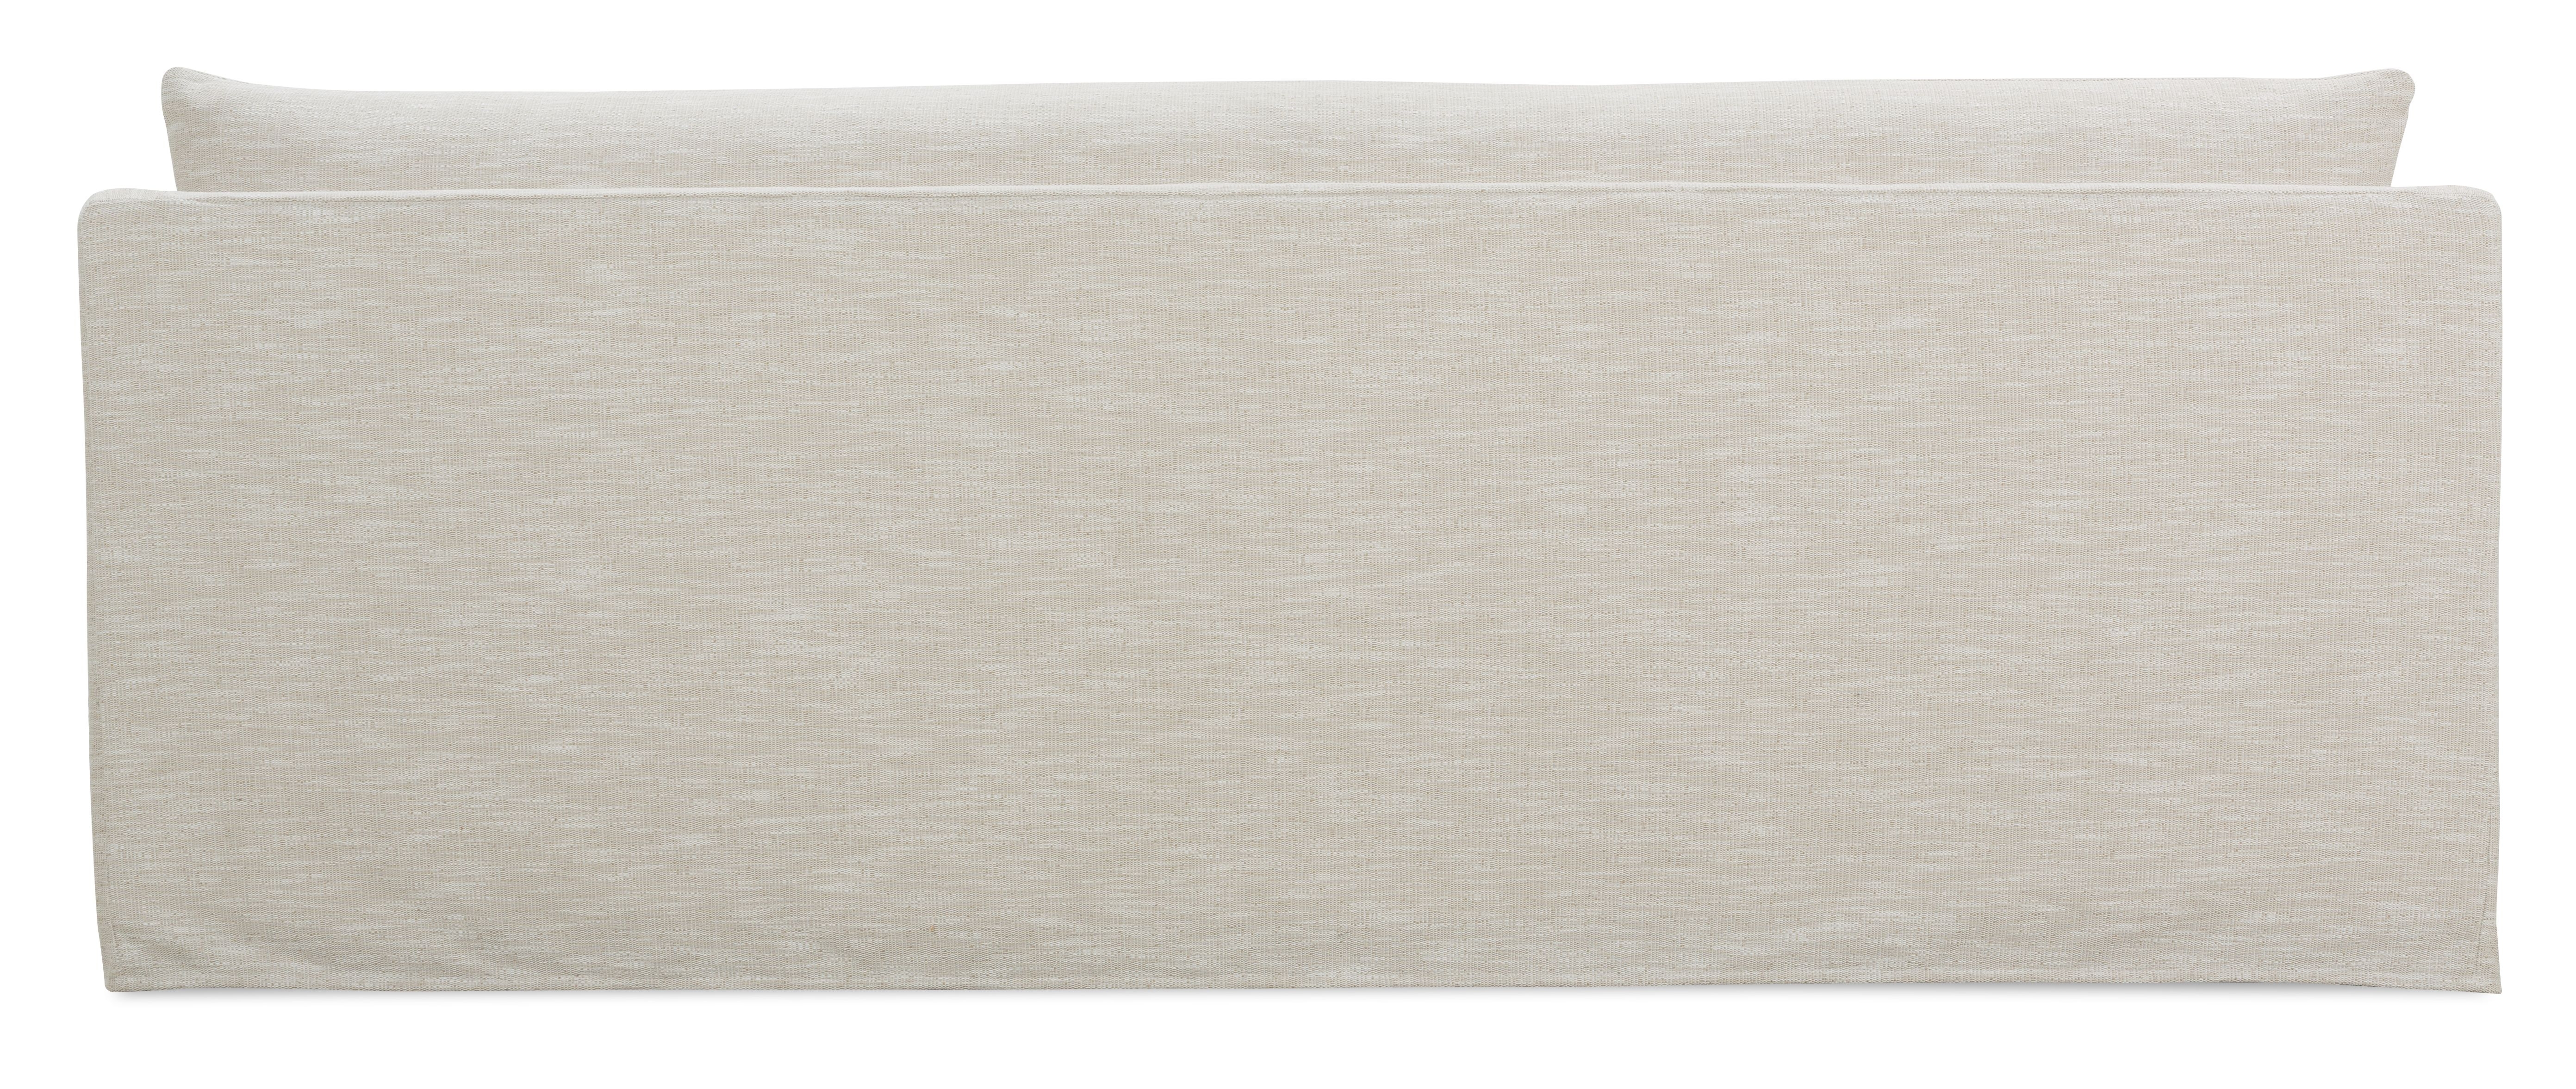 Fraser Slipcover Sofa, Bench Cushion, White, 95" - Image 2